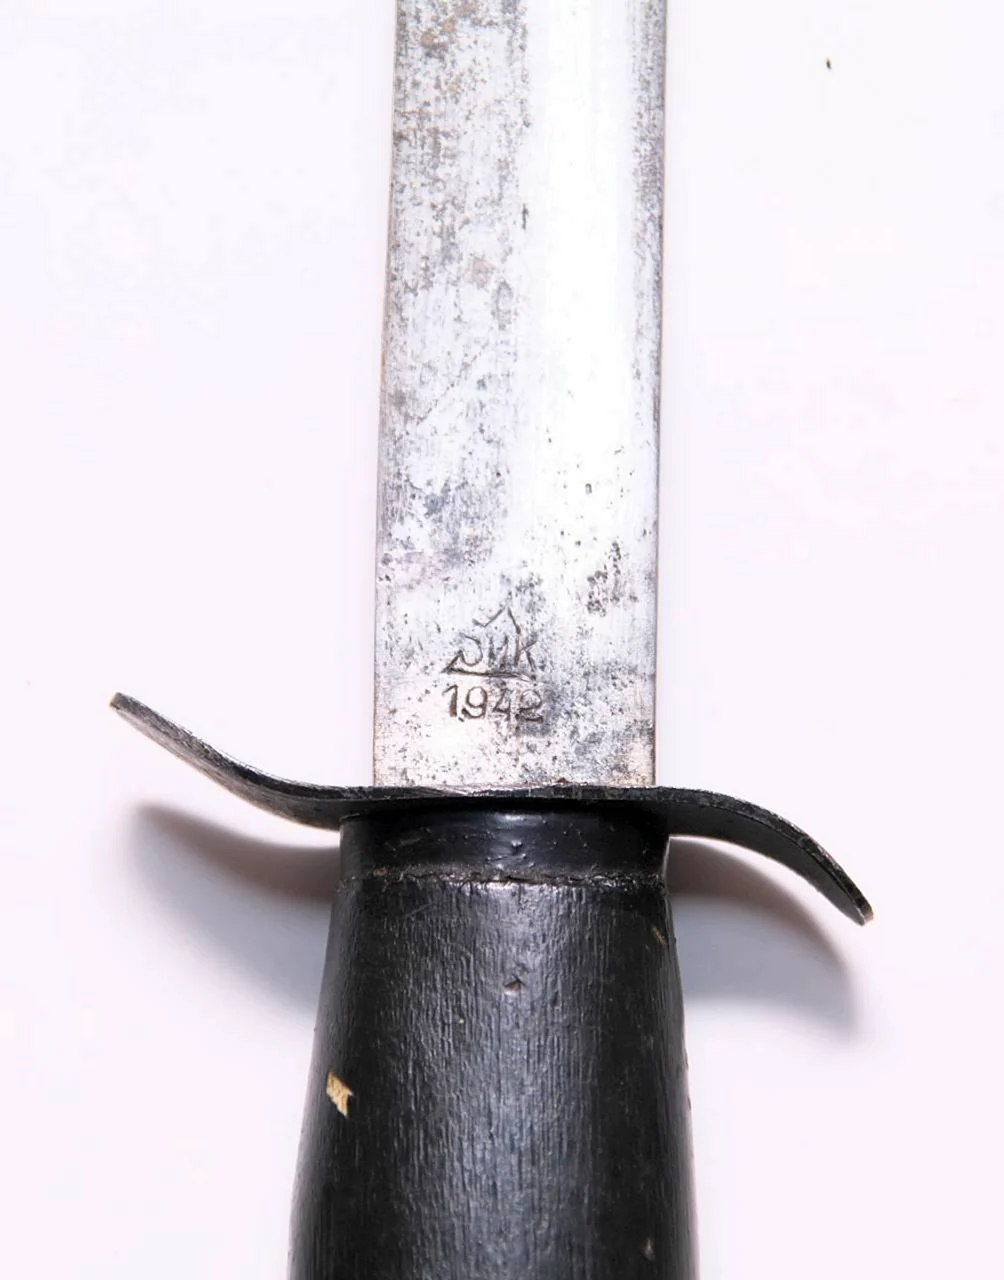 Нож НР-40 зик 1942